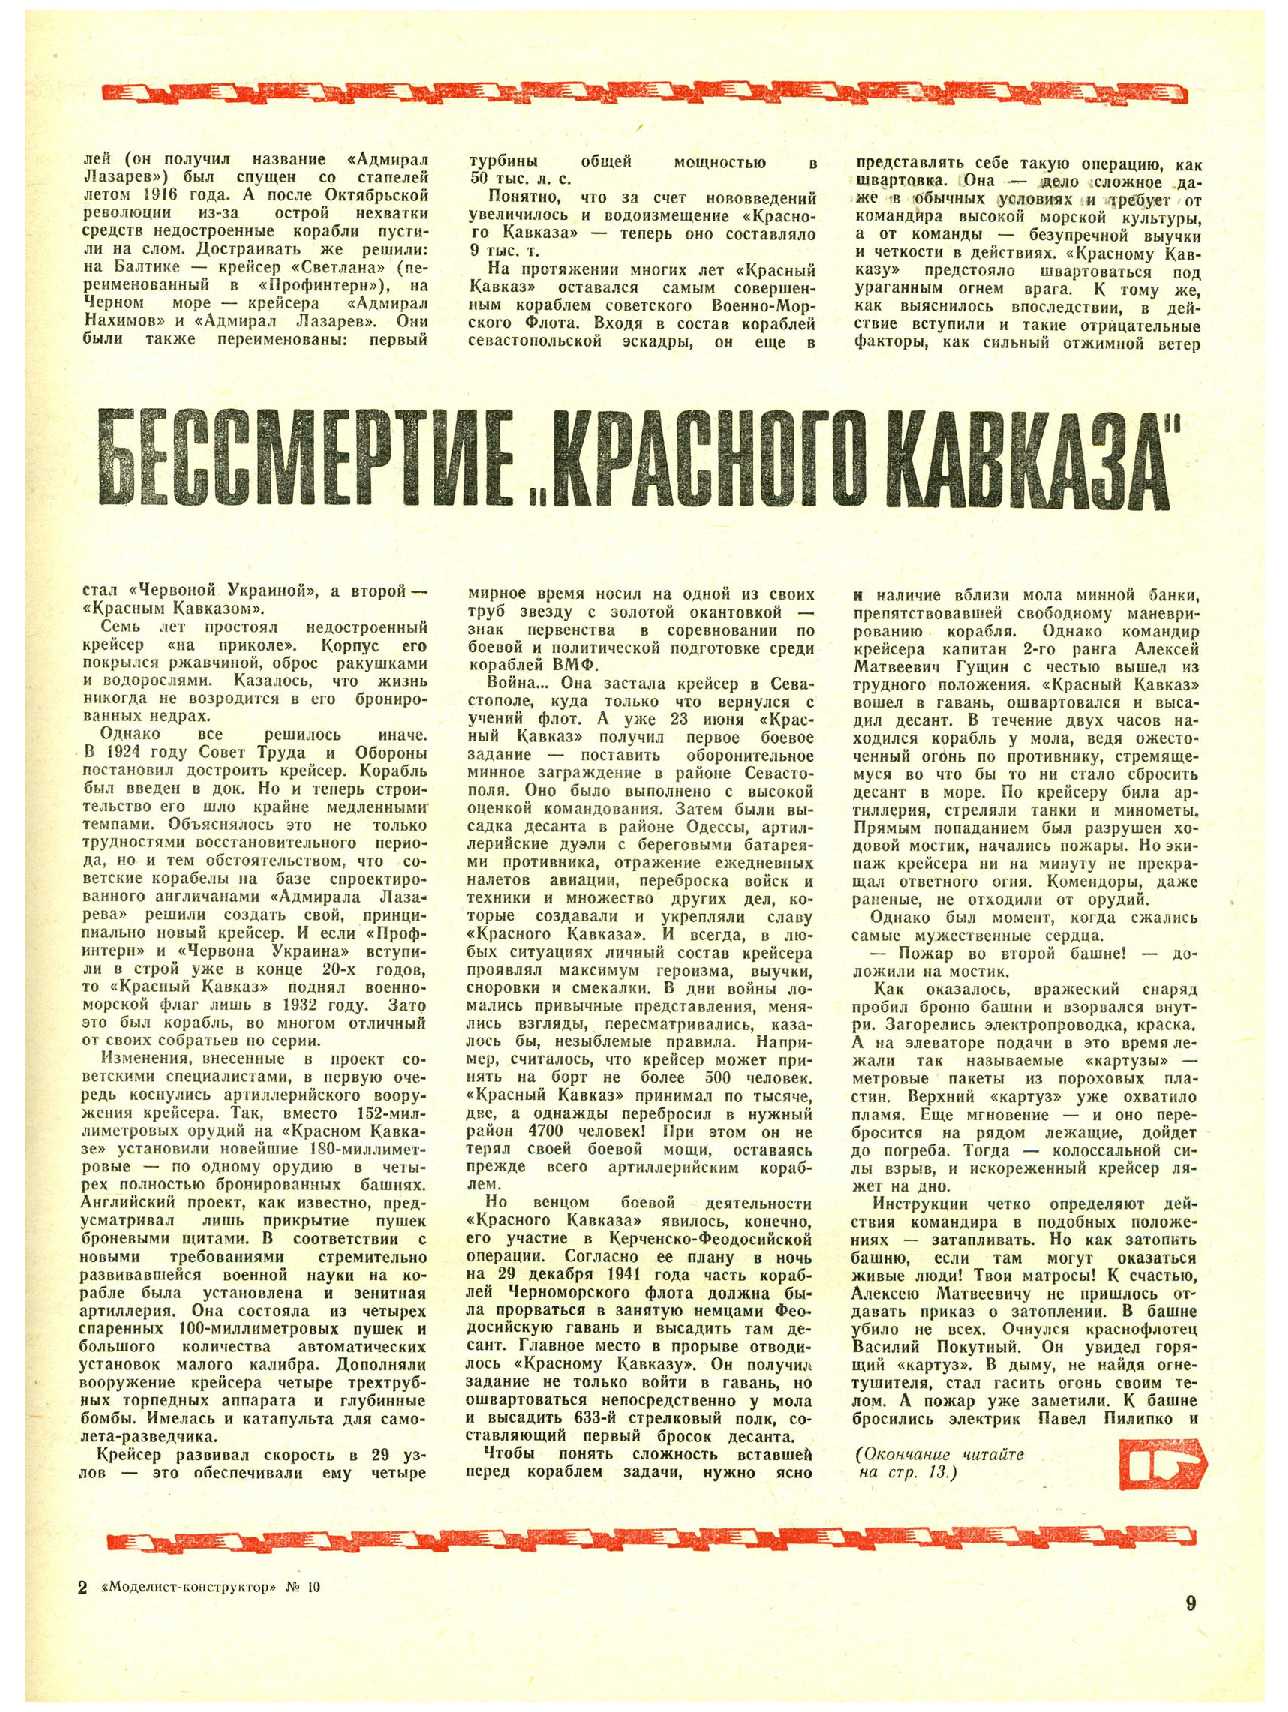 МК 10, 1972, 9 c.